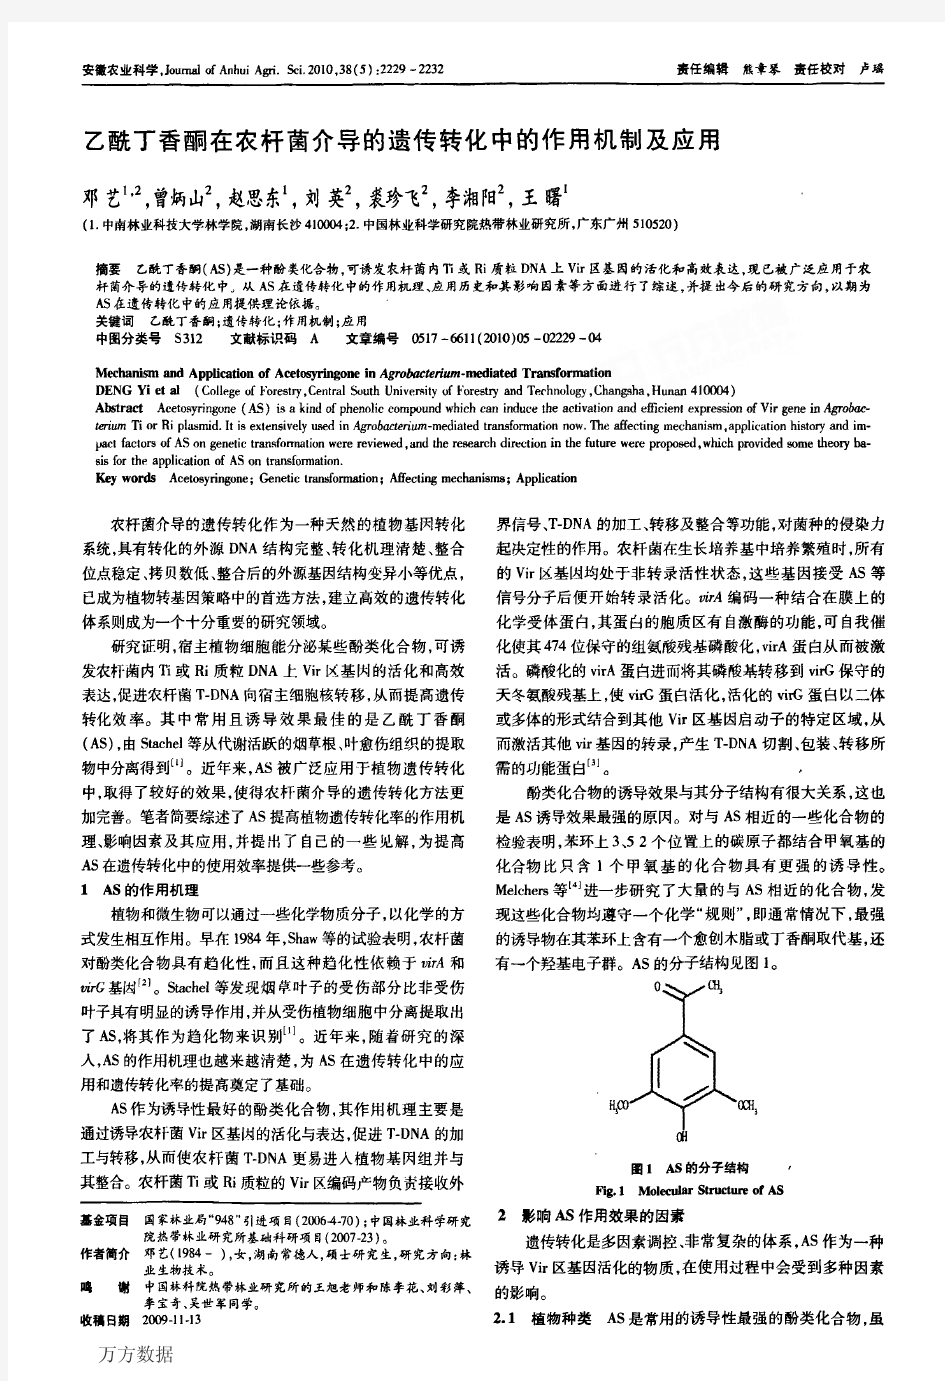 乙酰丁香酮在农杆菌介导的遗传转化中的作用机制及应用